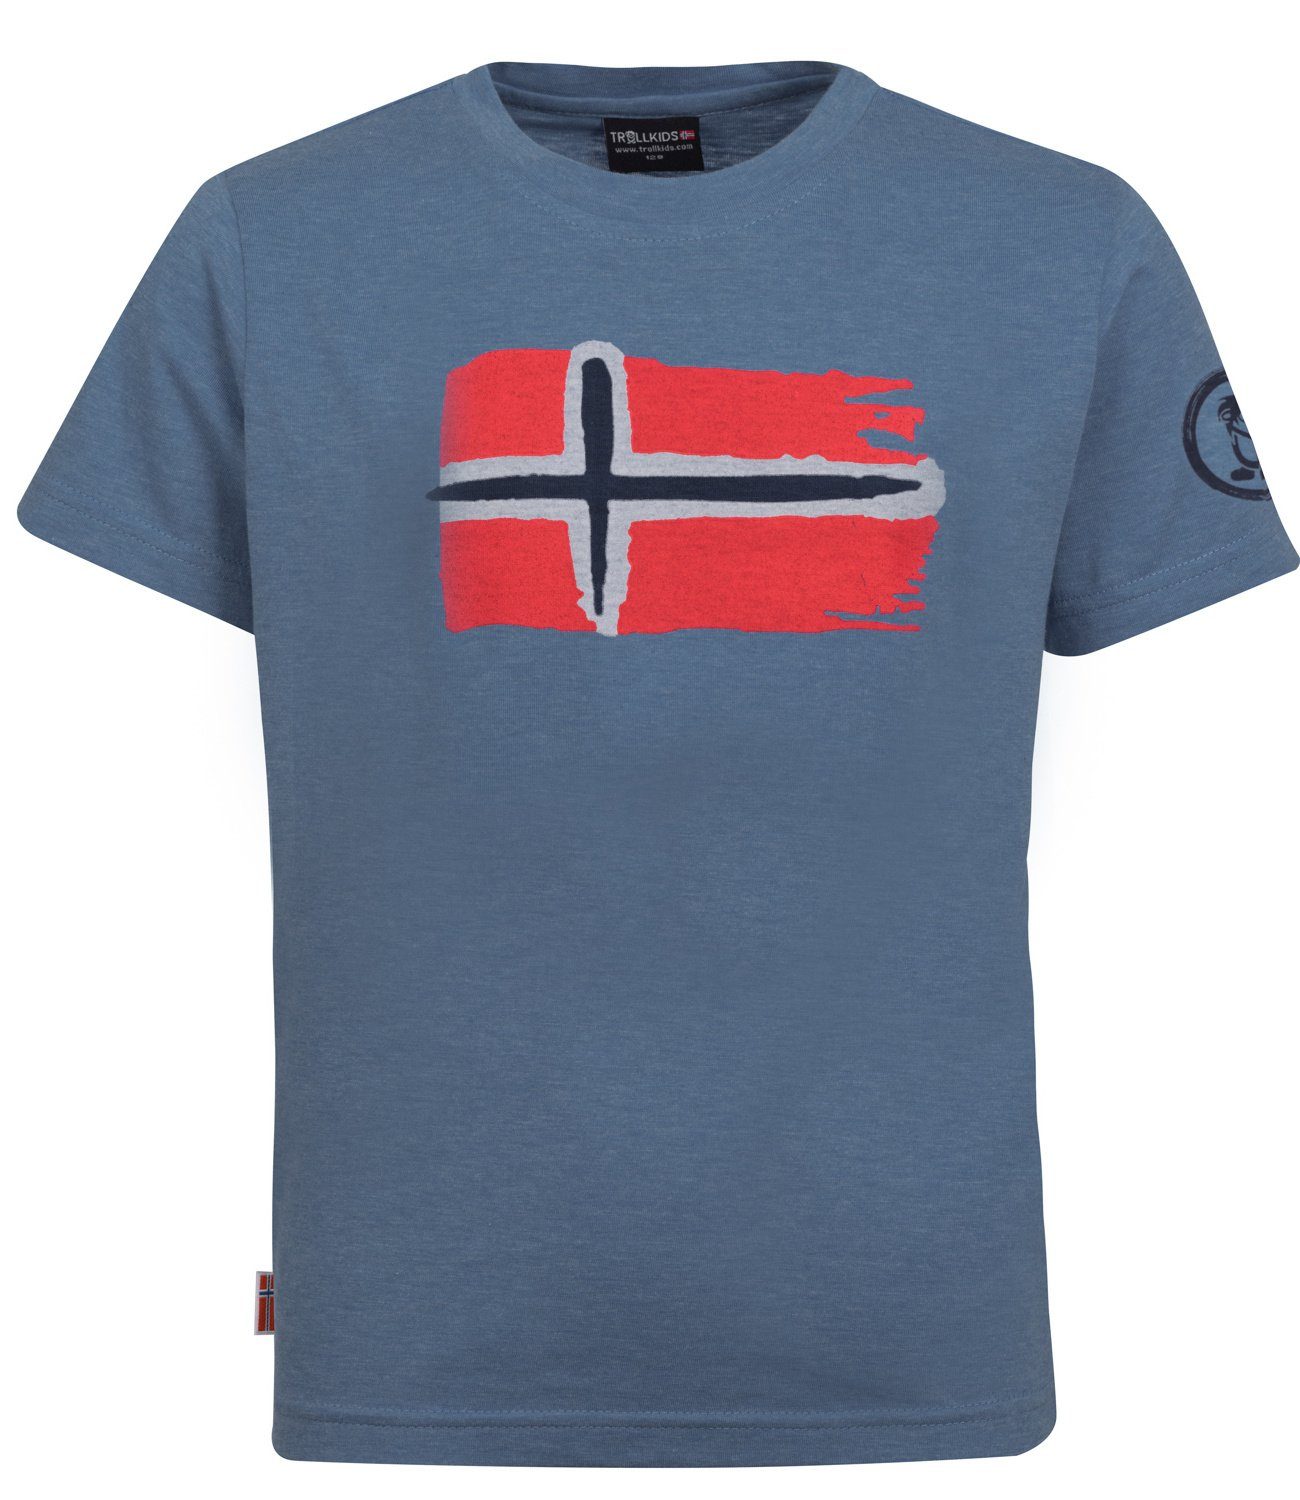 Blau T-Shirt TROLLKIDS Französisch Oslo